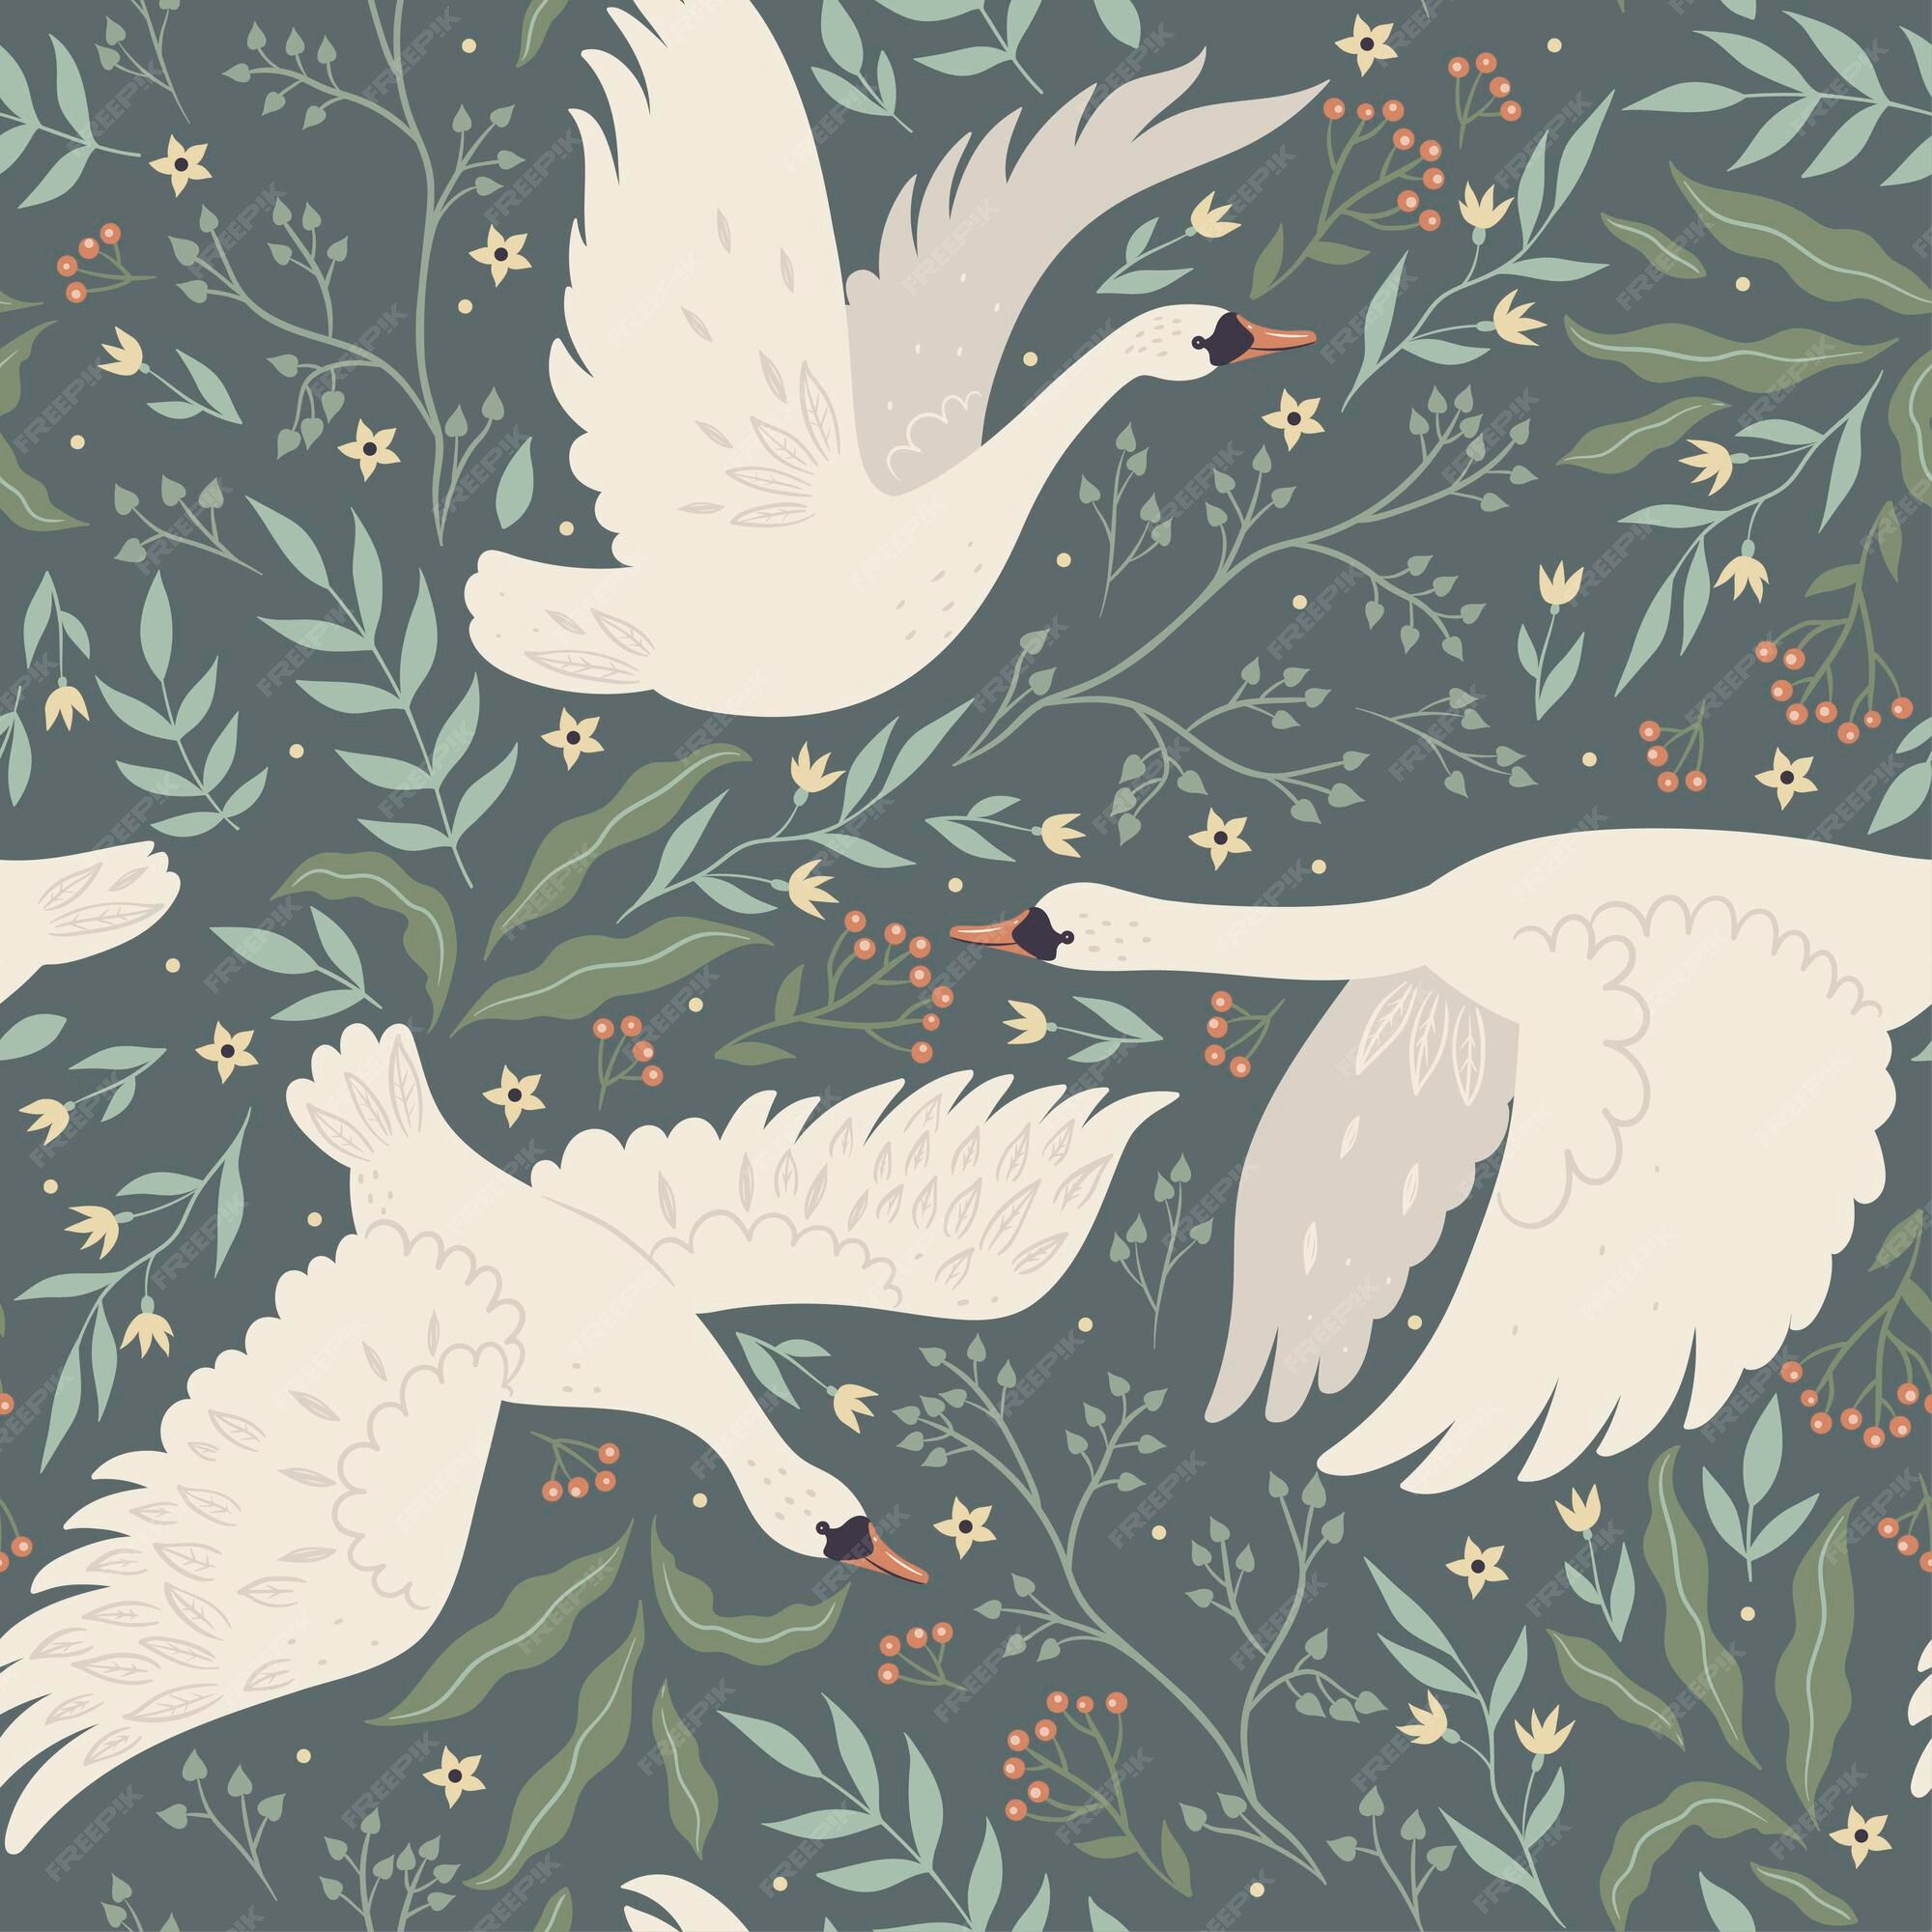 White Bird Wallpaper Images - Free Download on Freepik